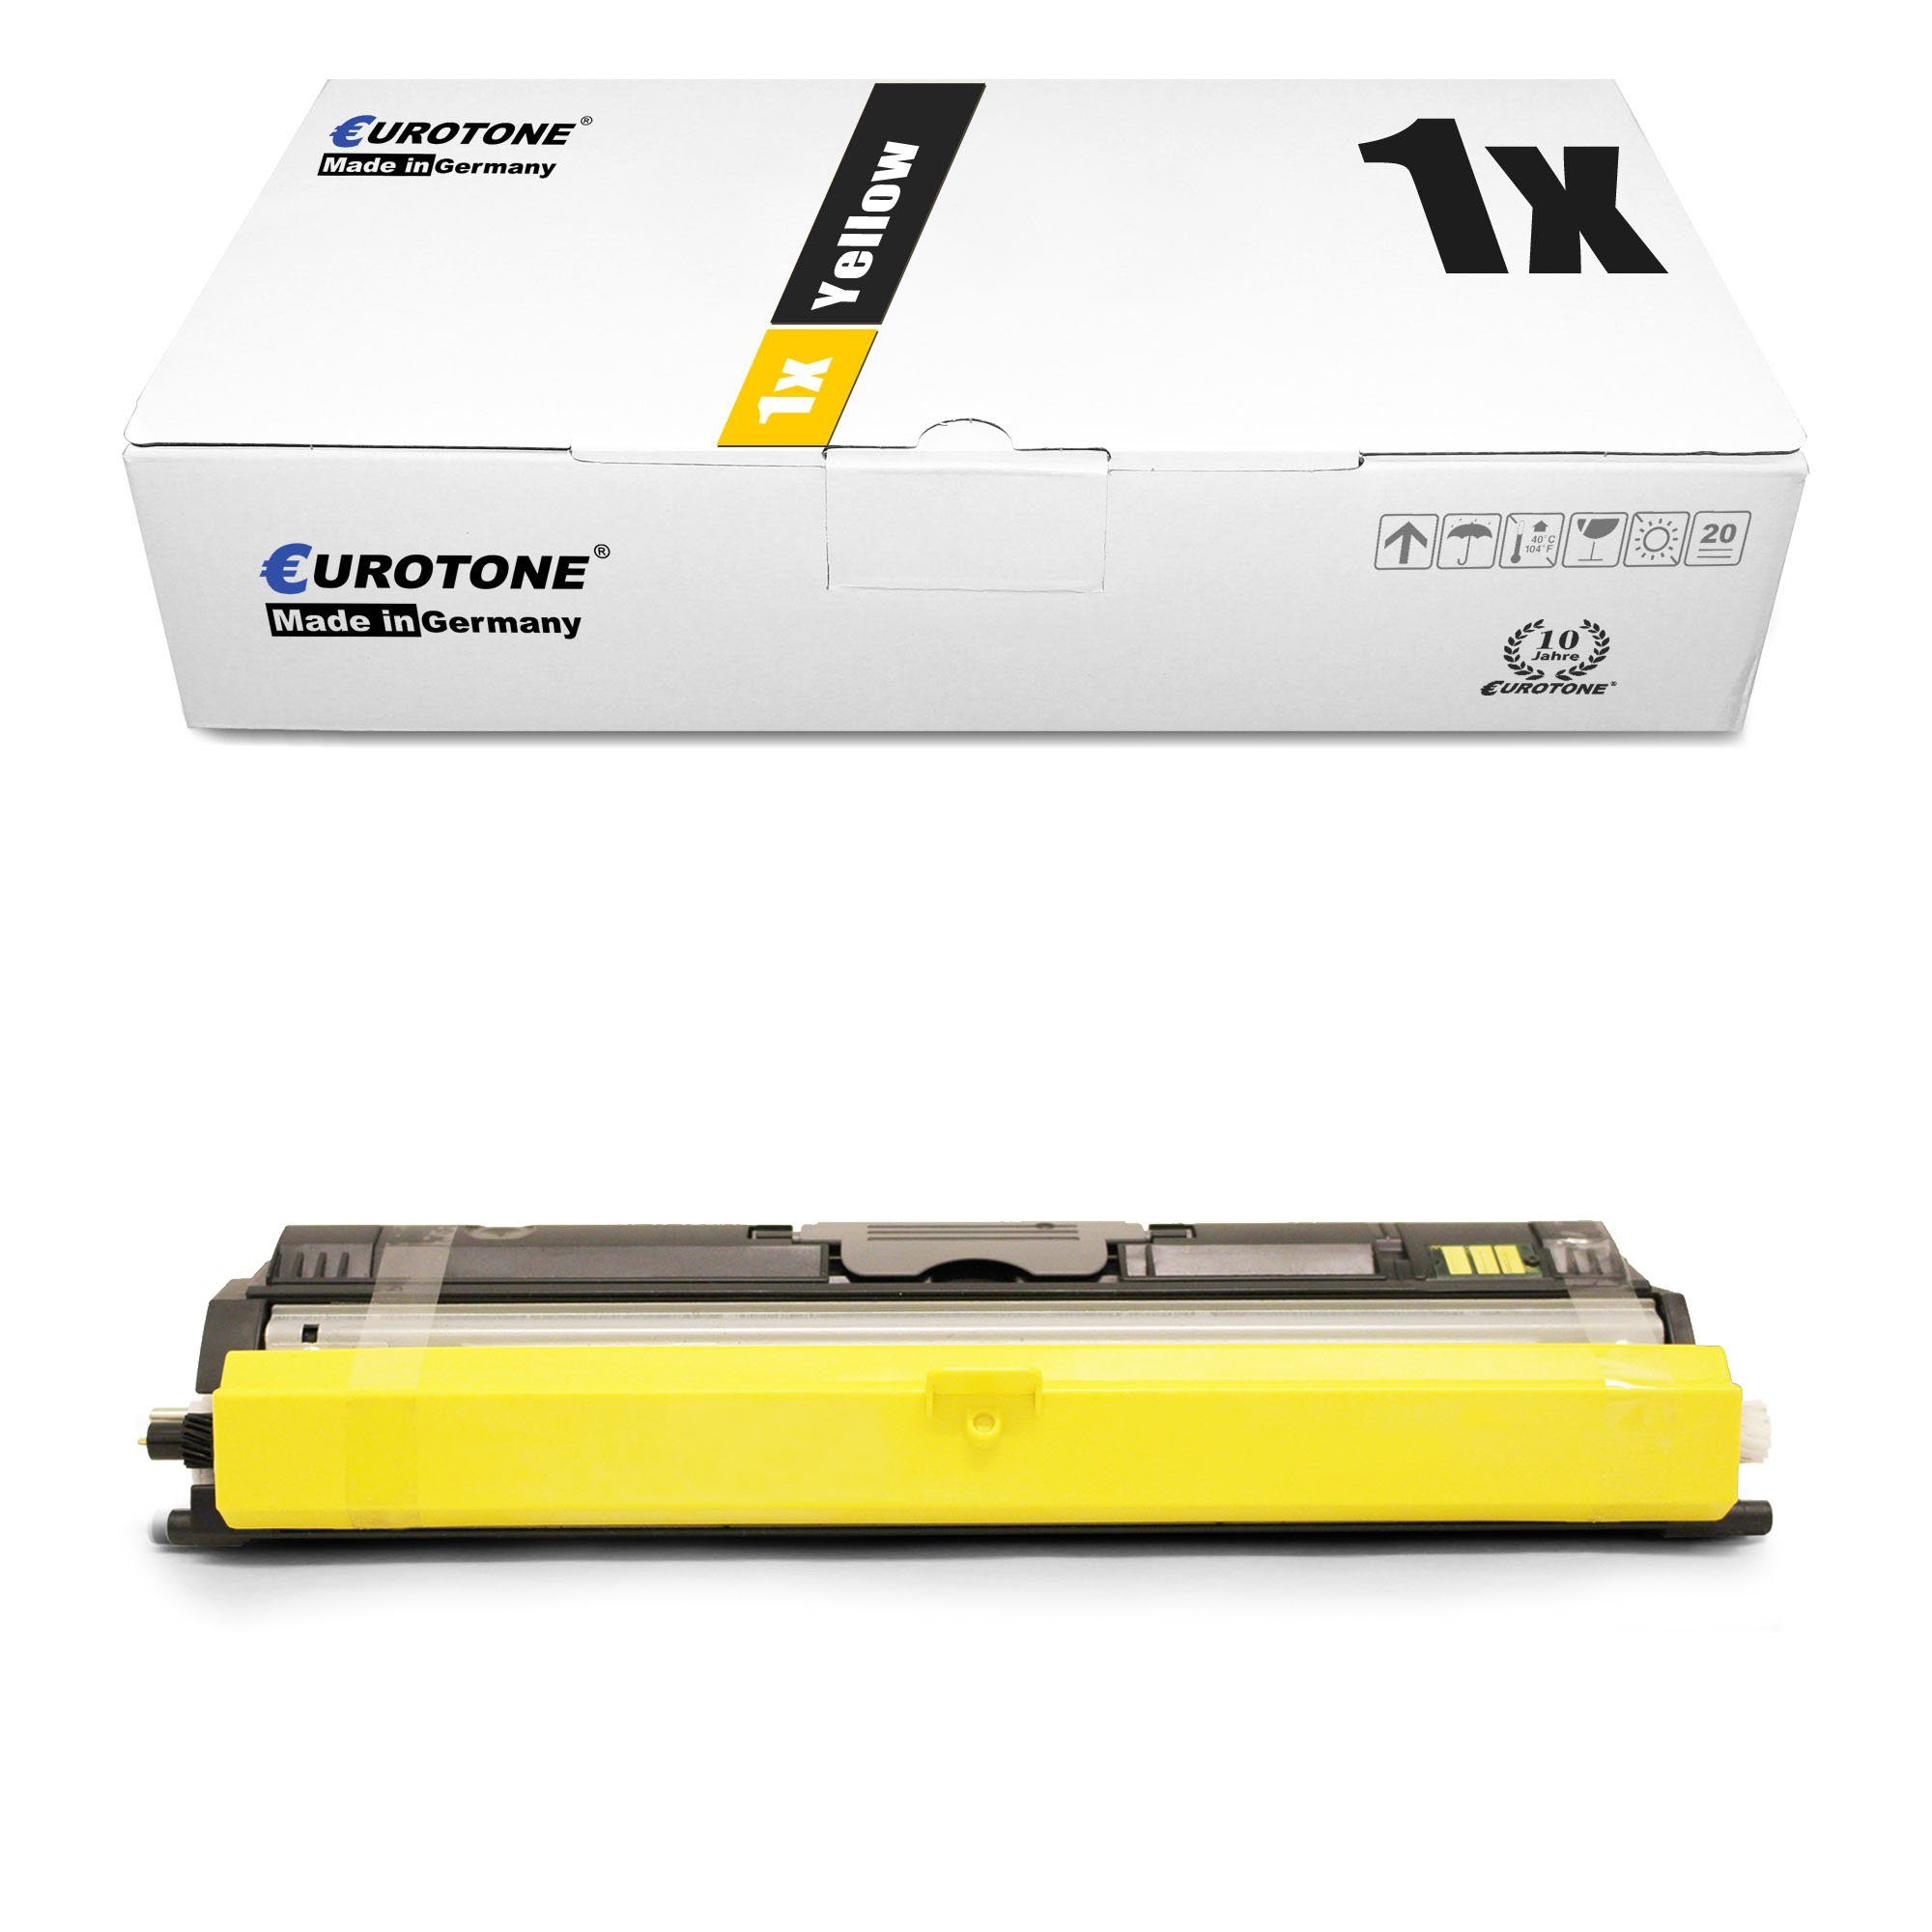 Yellow Aculaser C1600 Epson ersetzt Tonerkartusche Toner Eurotone fr